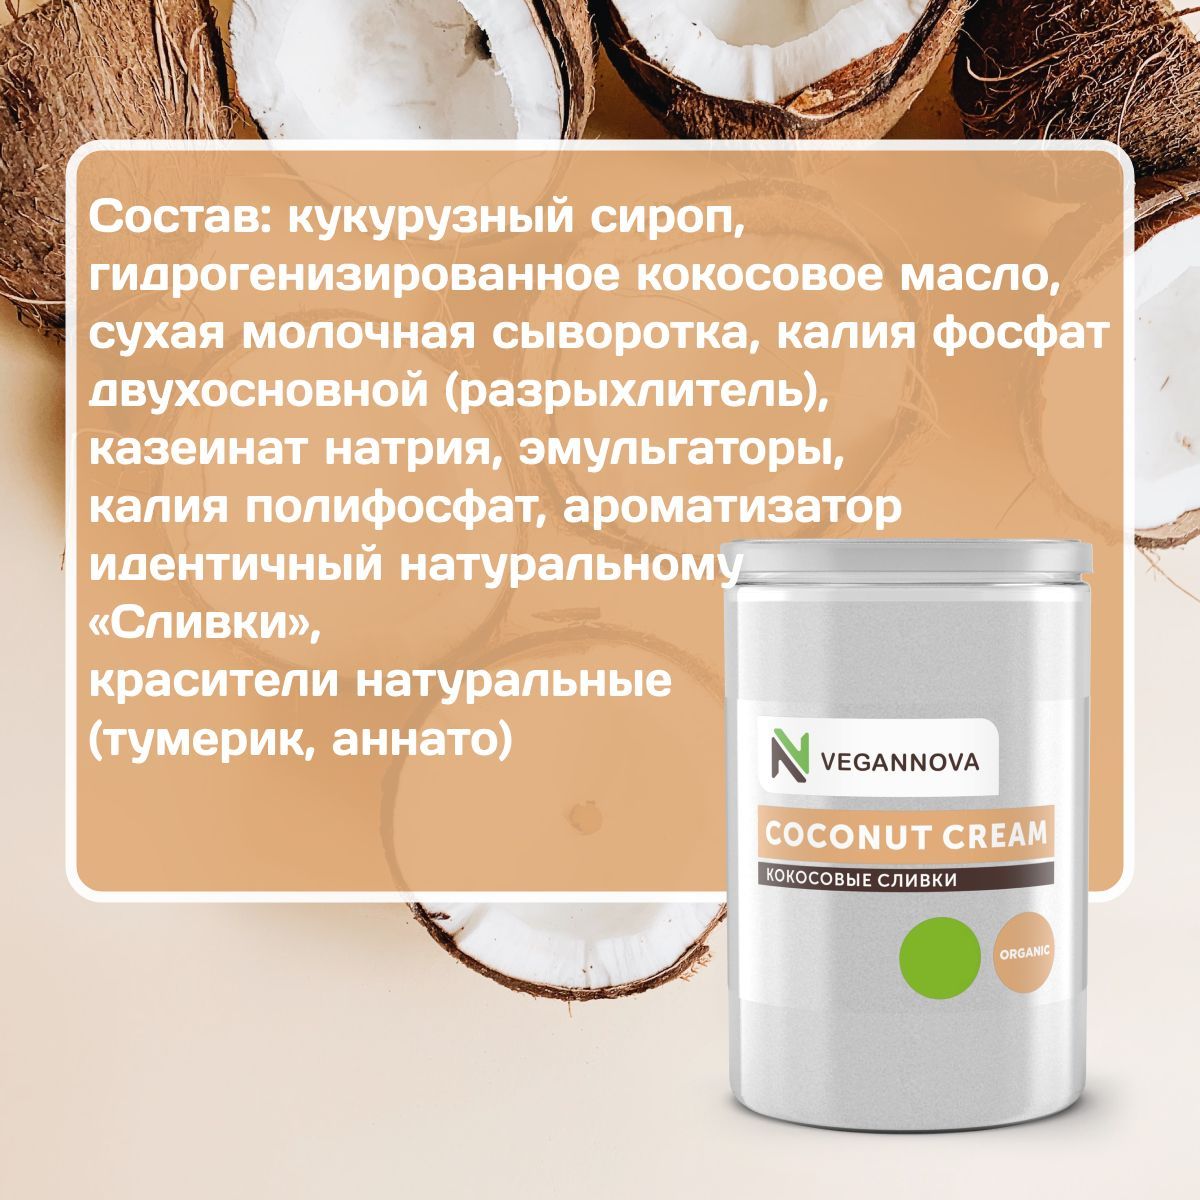 VeganNova Сухие кокосовые сливки для кофе и чая, растительные, 32% жирности, 500 г